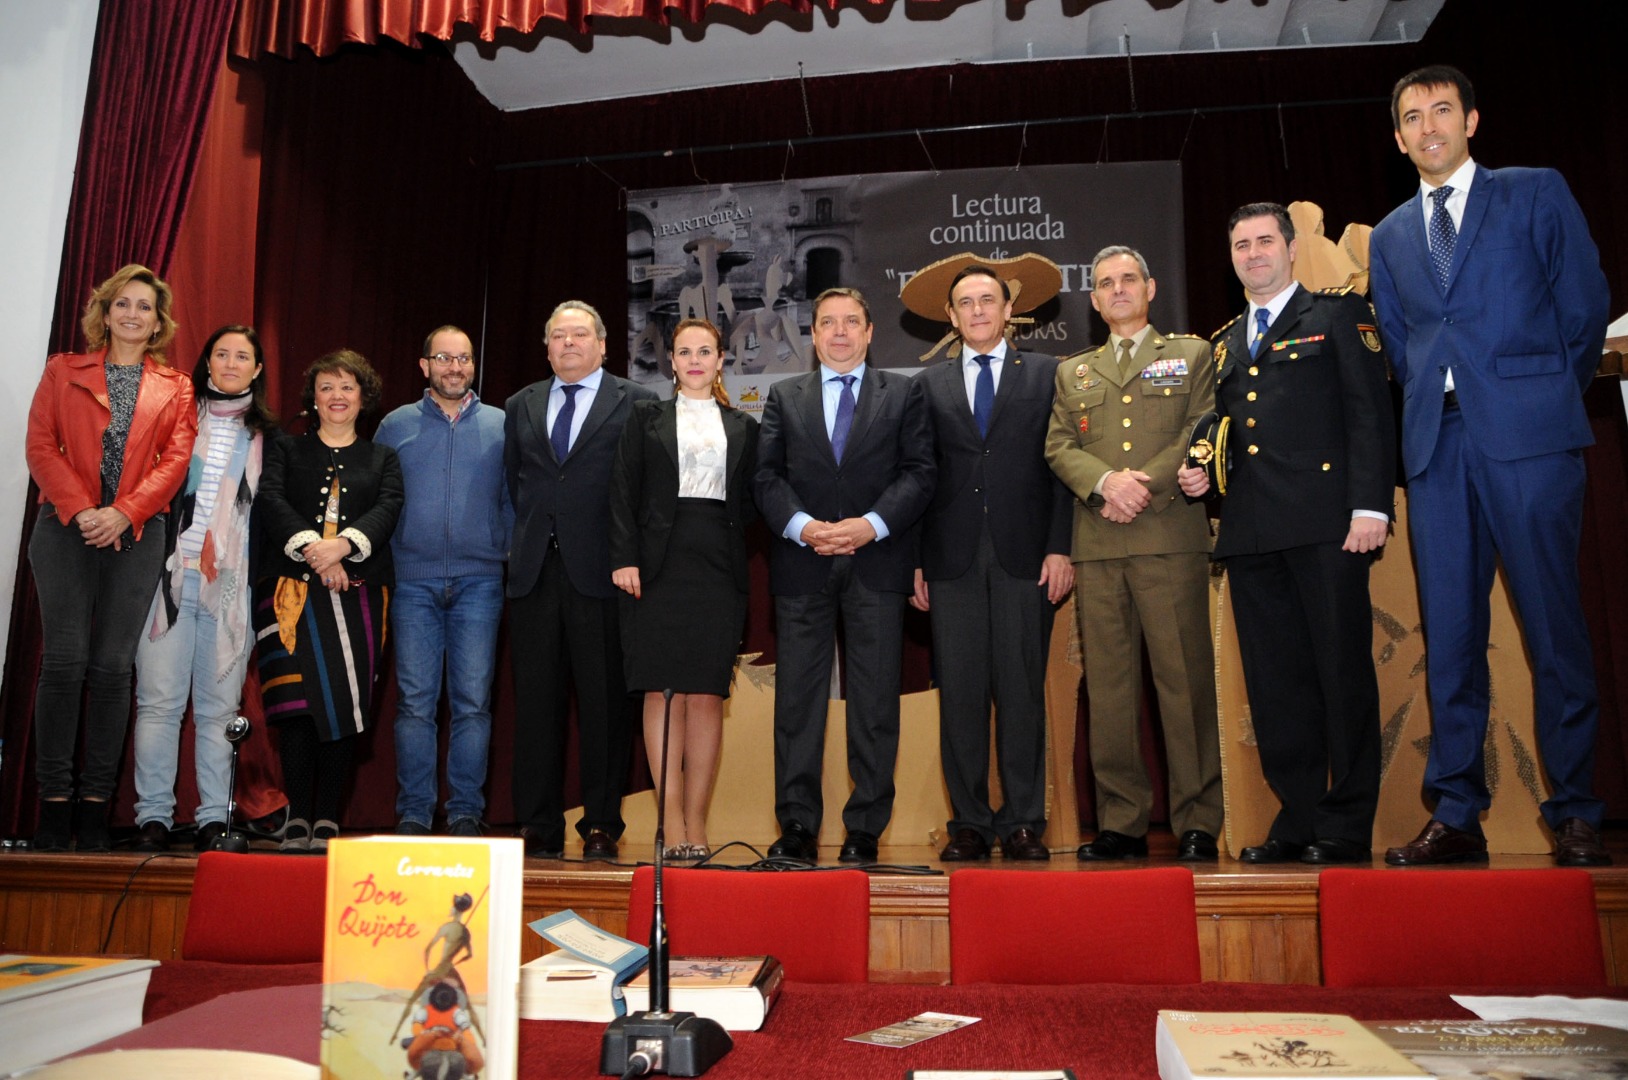 La Diputación celebra el Día del Libro con la tradicional lectura continuada de El Quijote